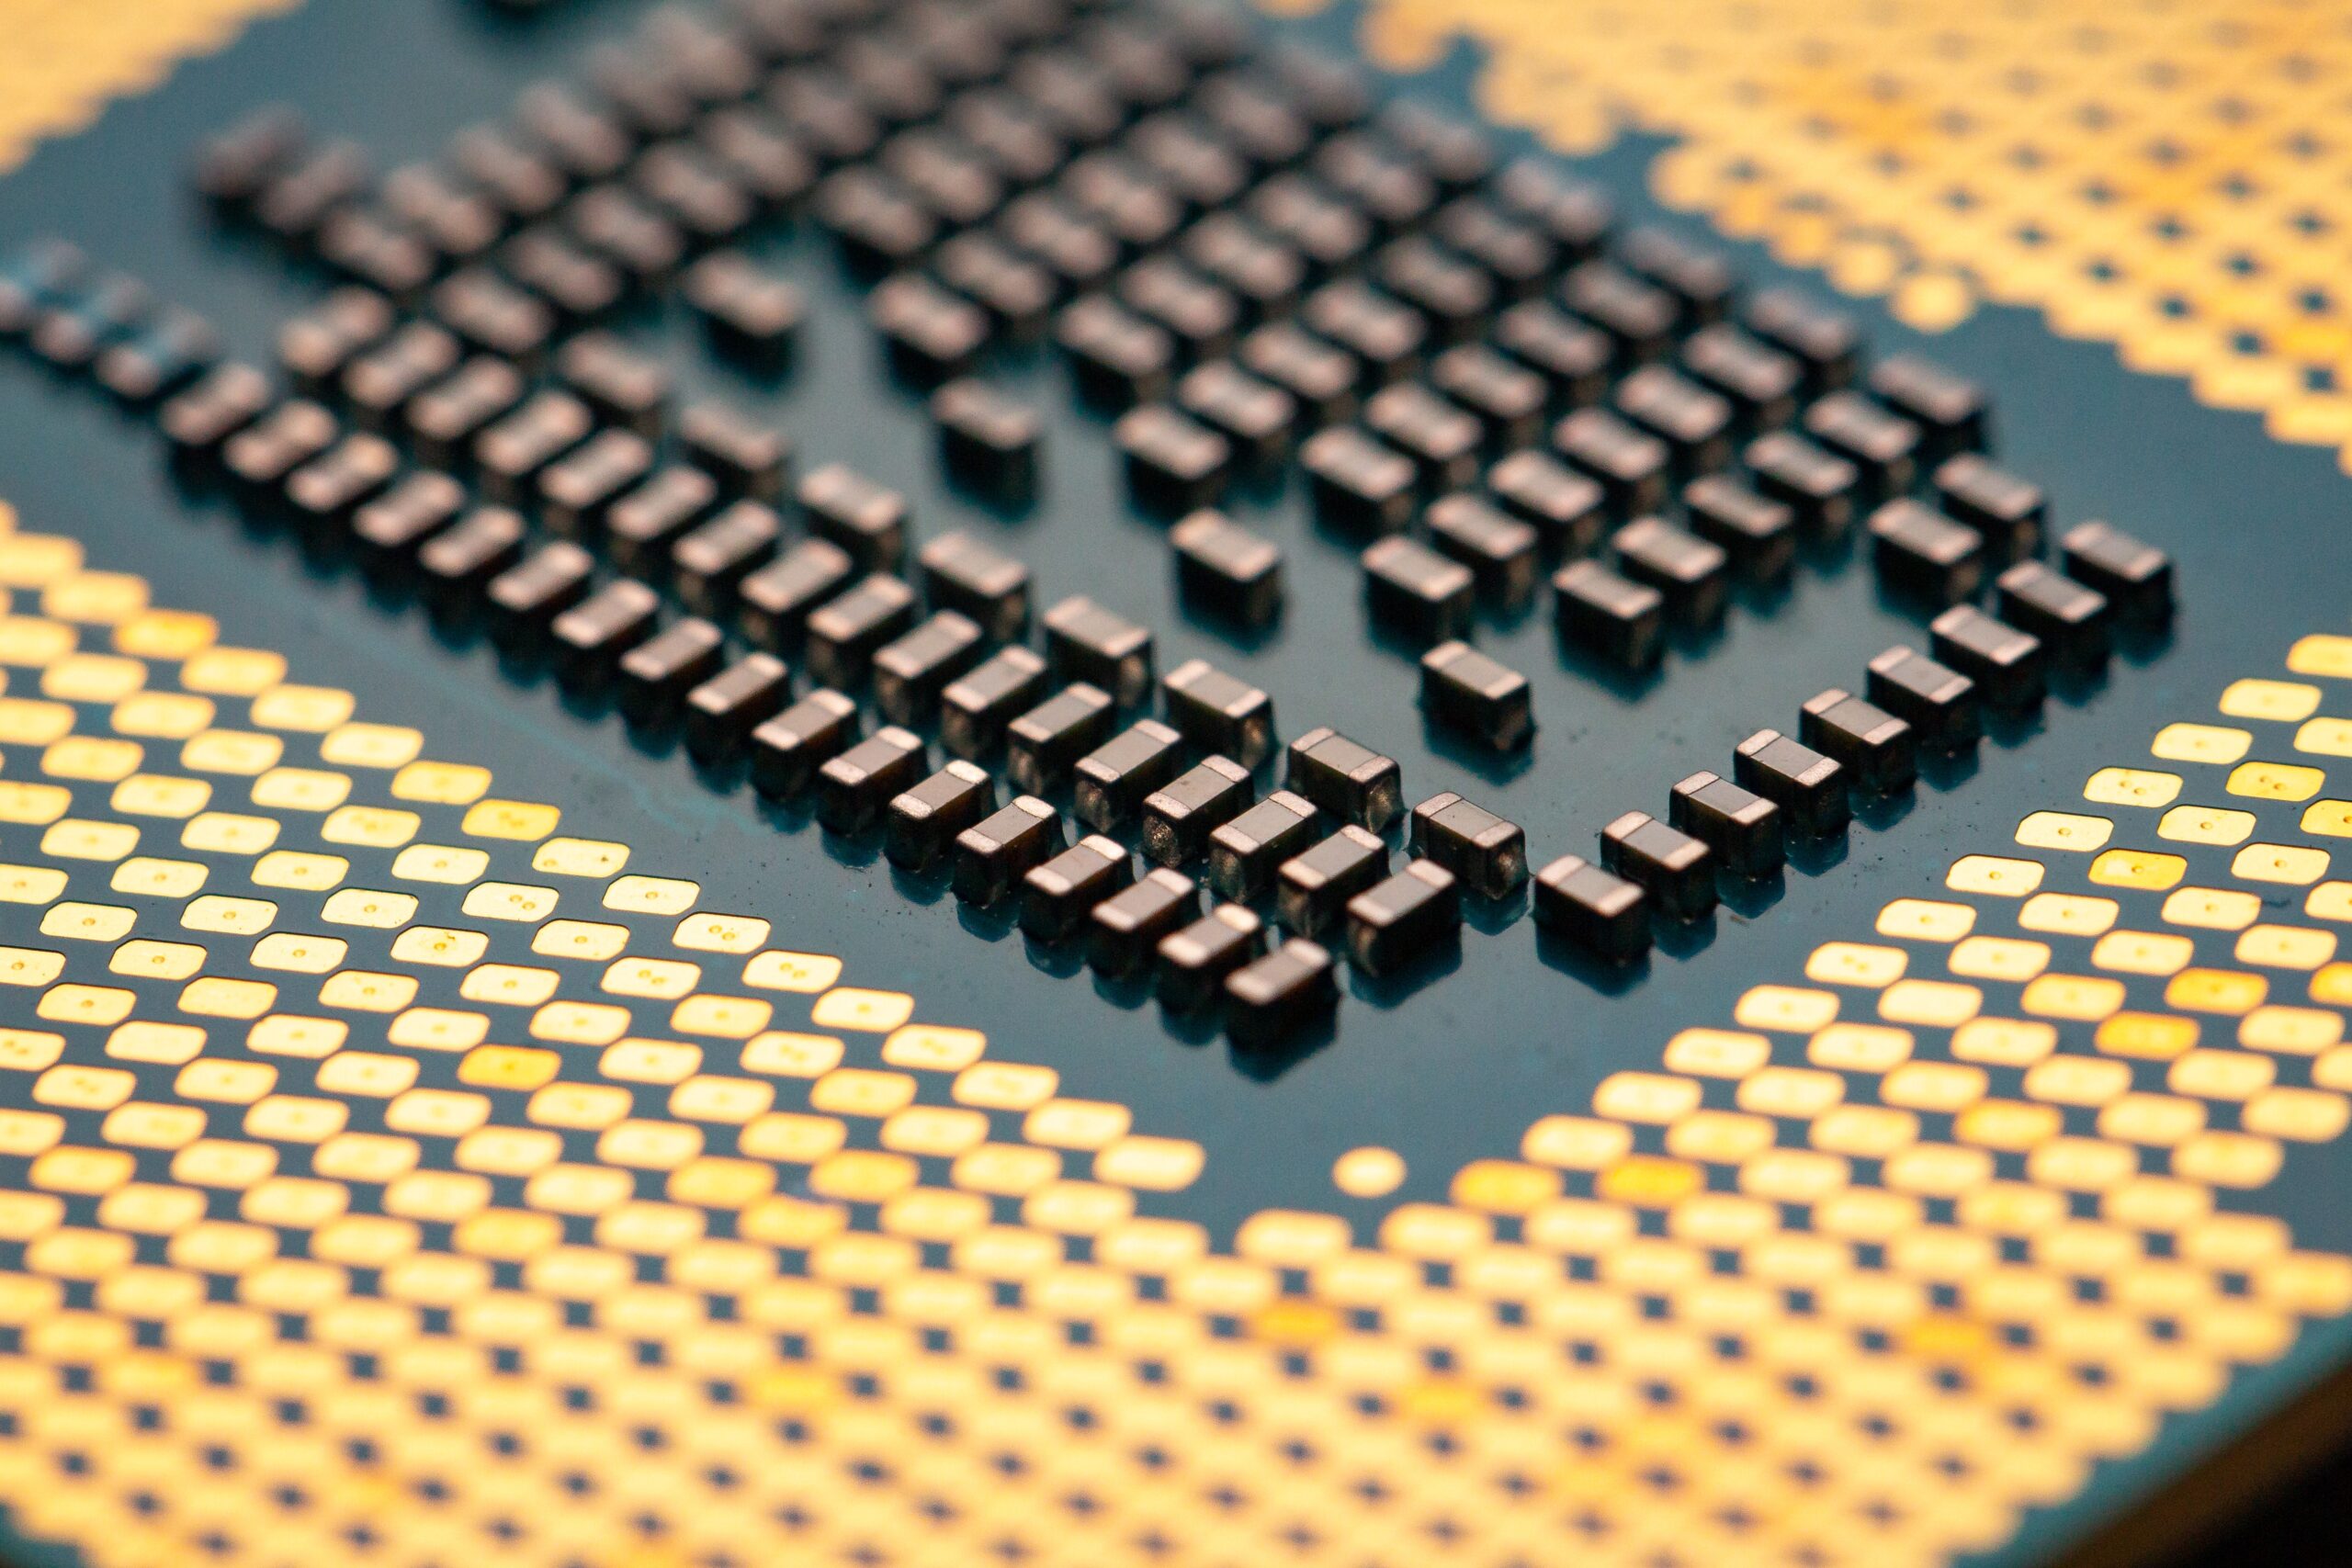 Closeup of a CPU